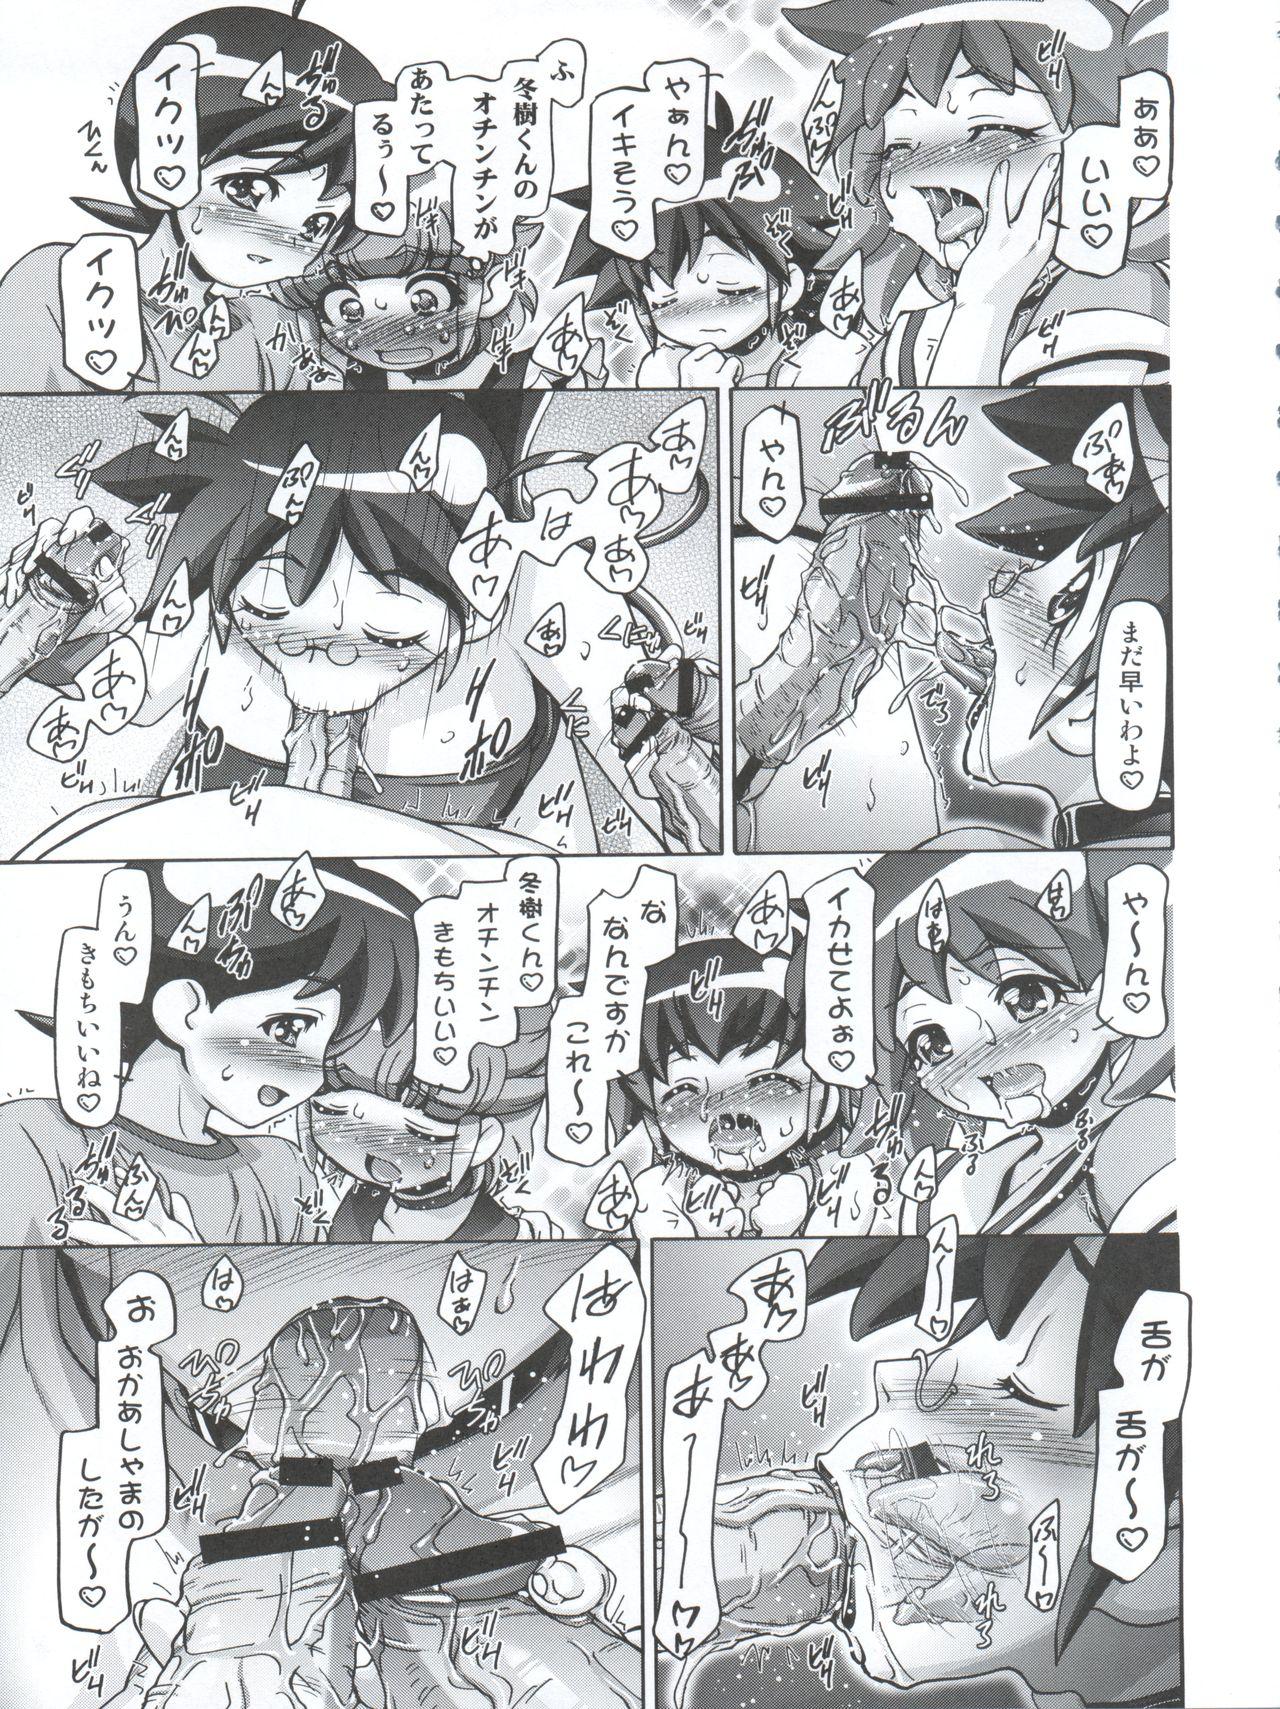 Teacher Aki Autumn - Keroro gunsou Strip - Page 7